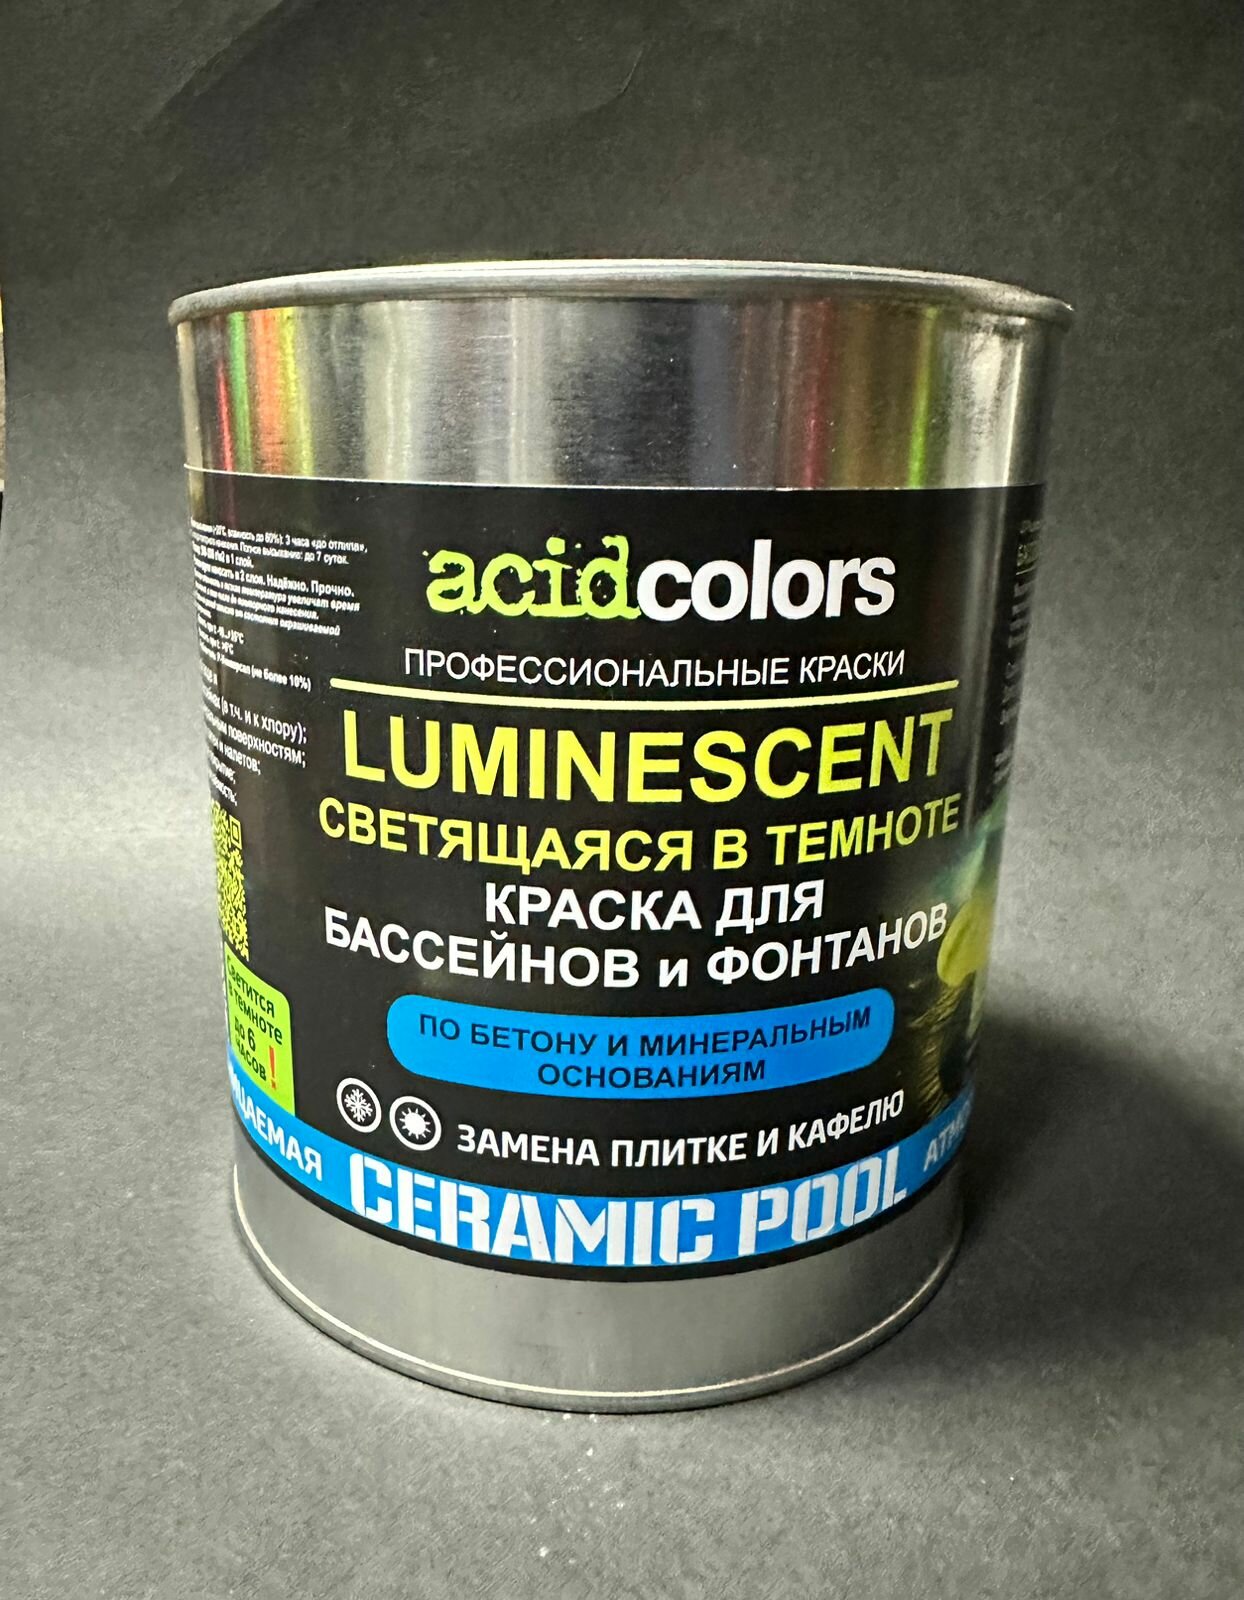 Краска для бассейна и фонтана, светящаяся в темноте Acidcolors Luminescent, 3 кг бежевая